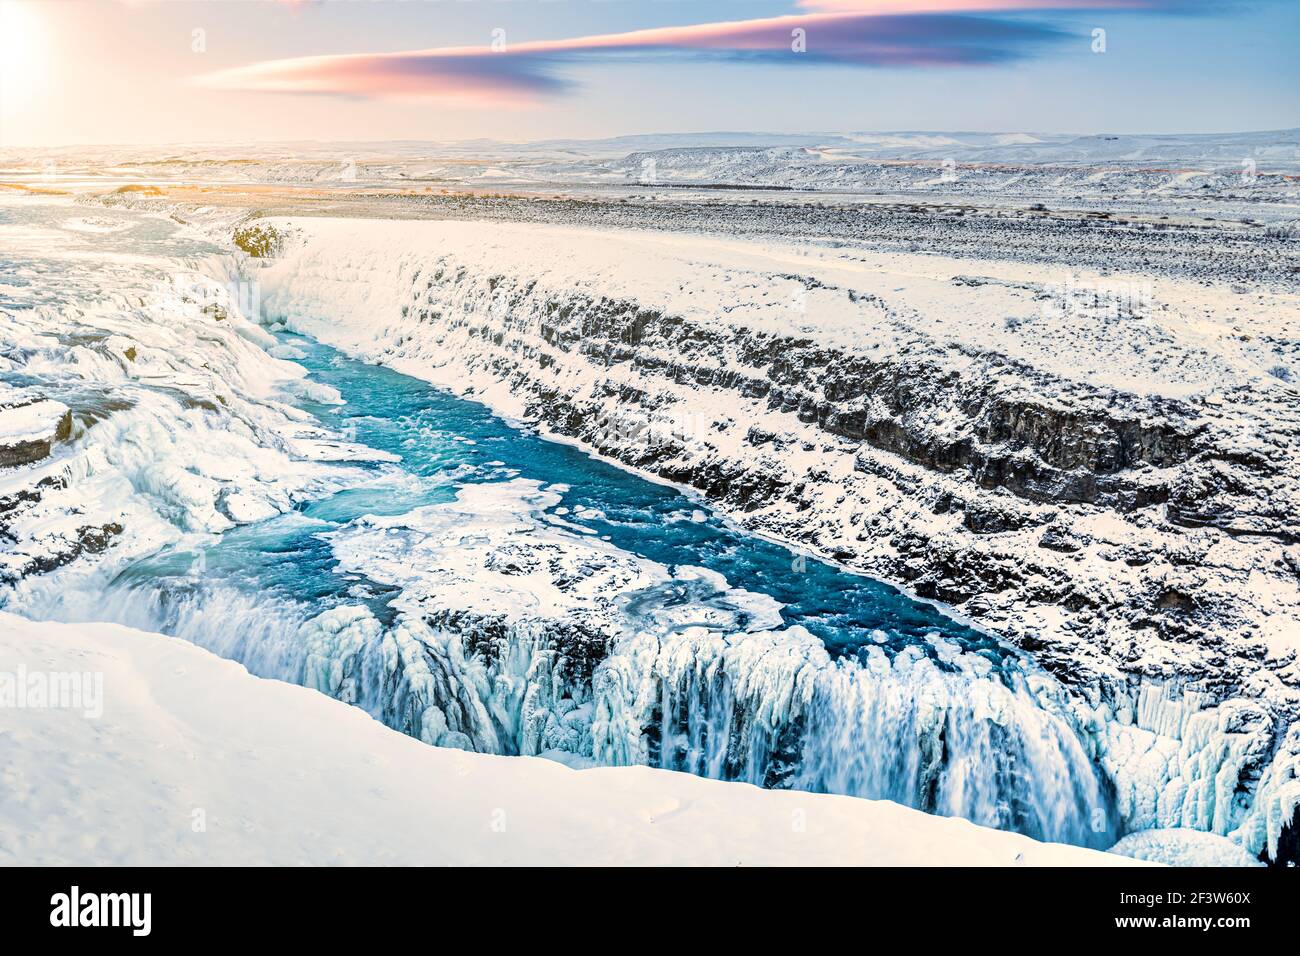 Cascade de Gullfoss en hiver, en Islande. Gullfoss est l'une des attractions touristiques les plus populaires d'Islande. Banque D'Images